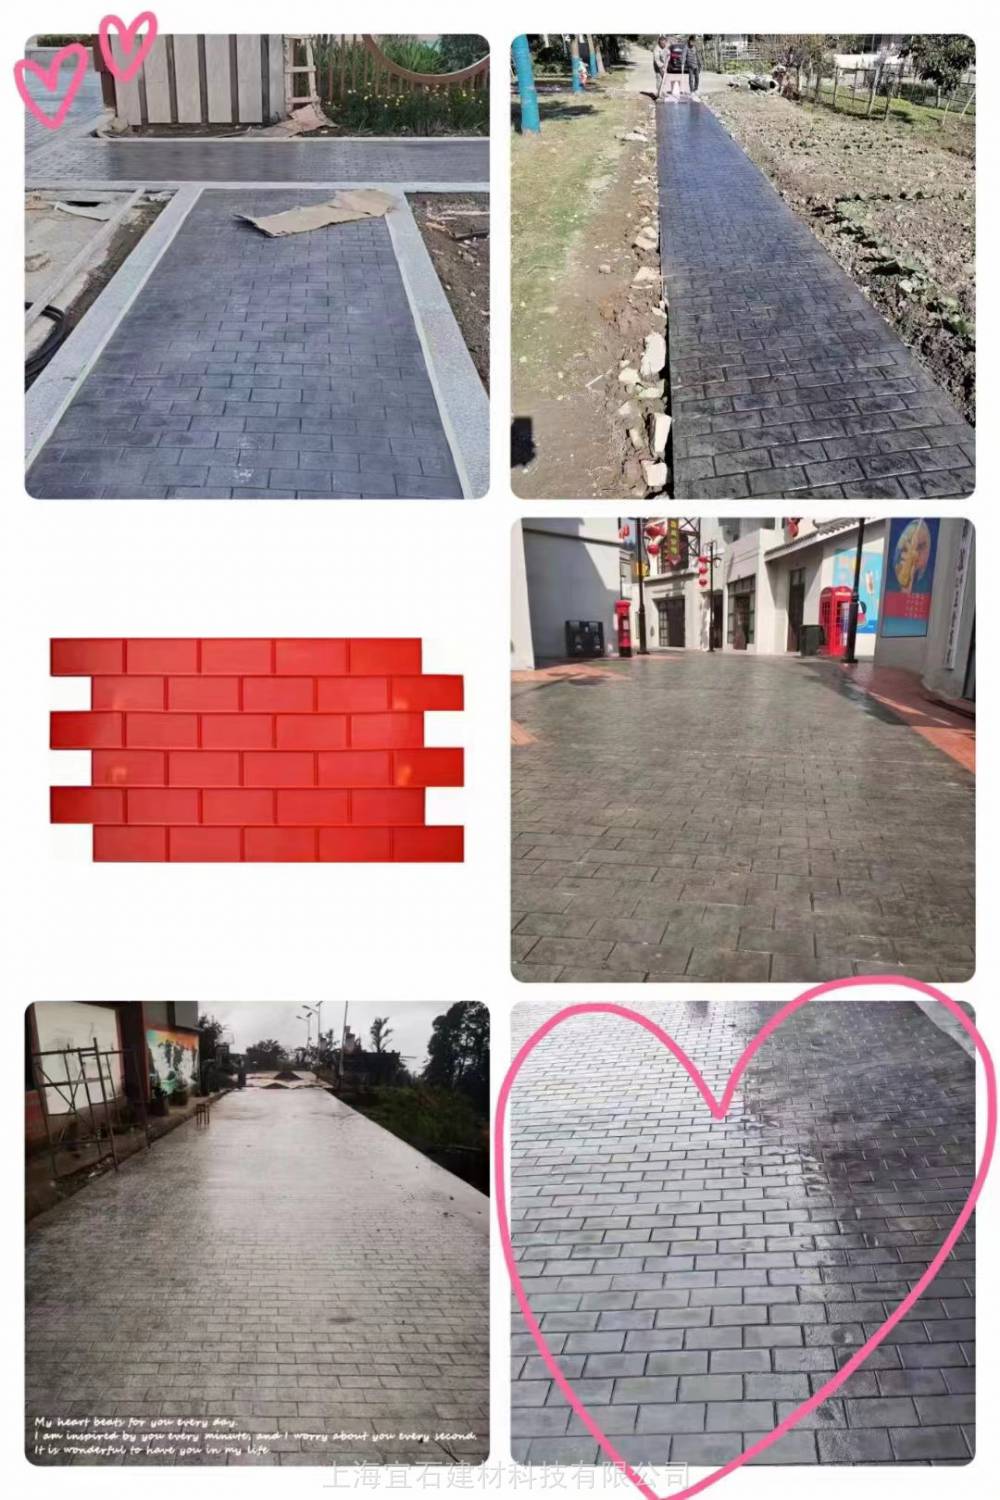 北京公园仿条石压花地坪材料颜色定制青灰色人字砖压模模具借用